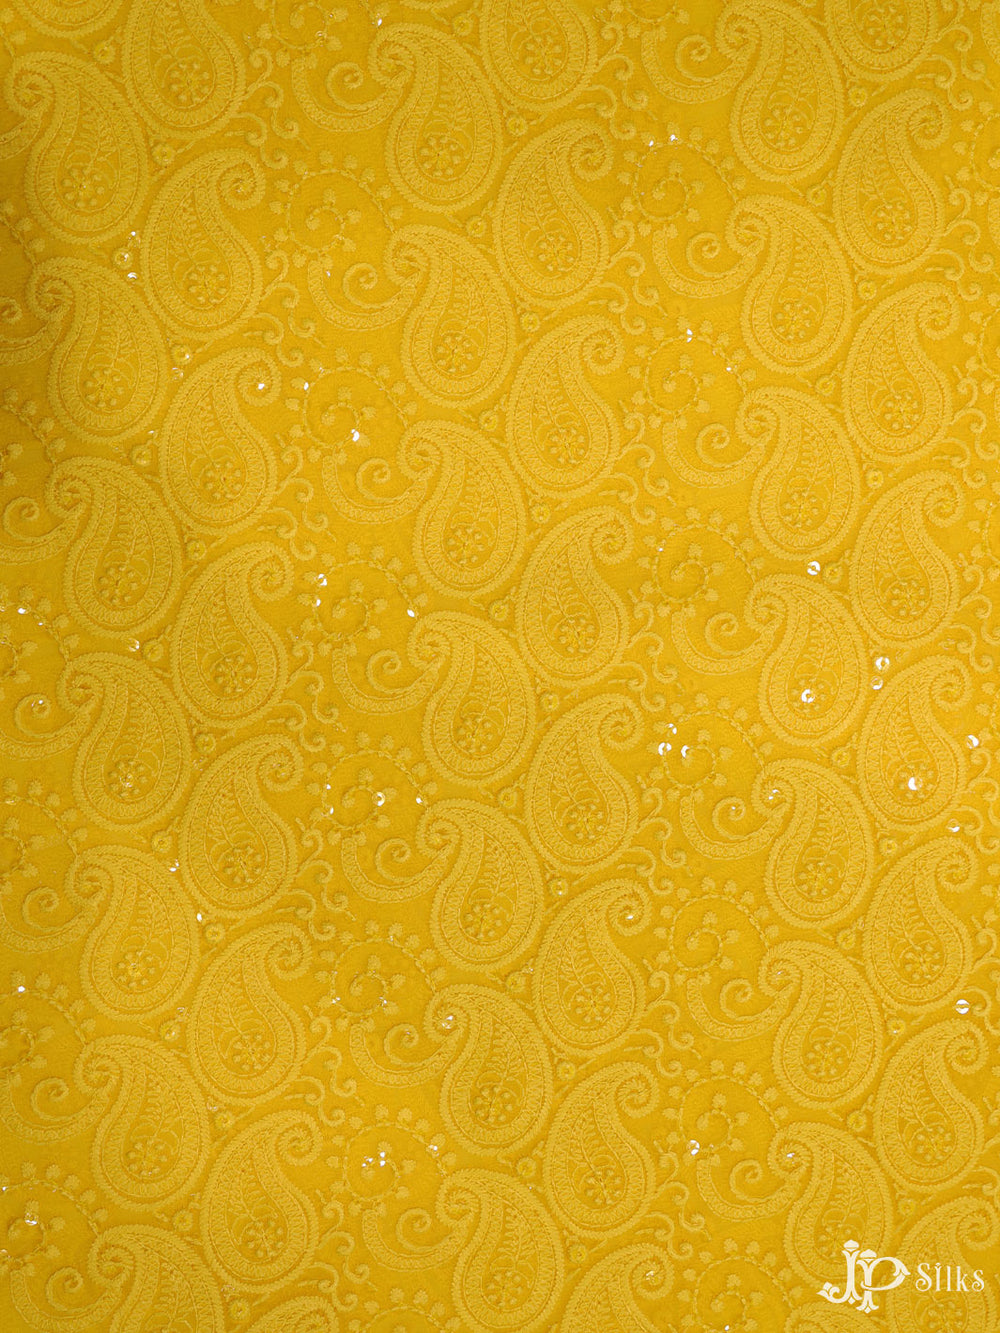 Yellow Chiffon Chikankari Fabric - C3105 - View 1